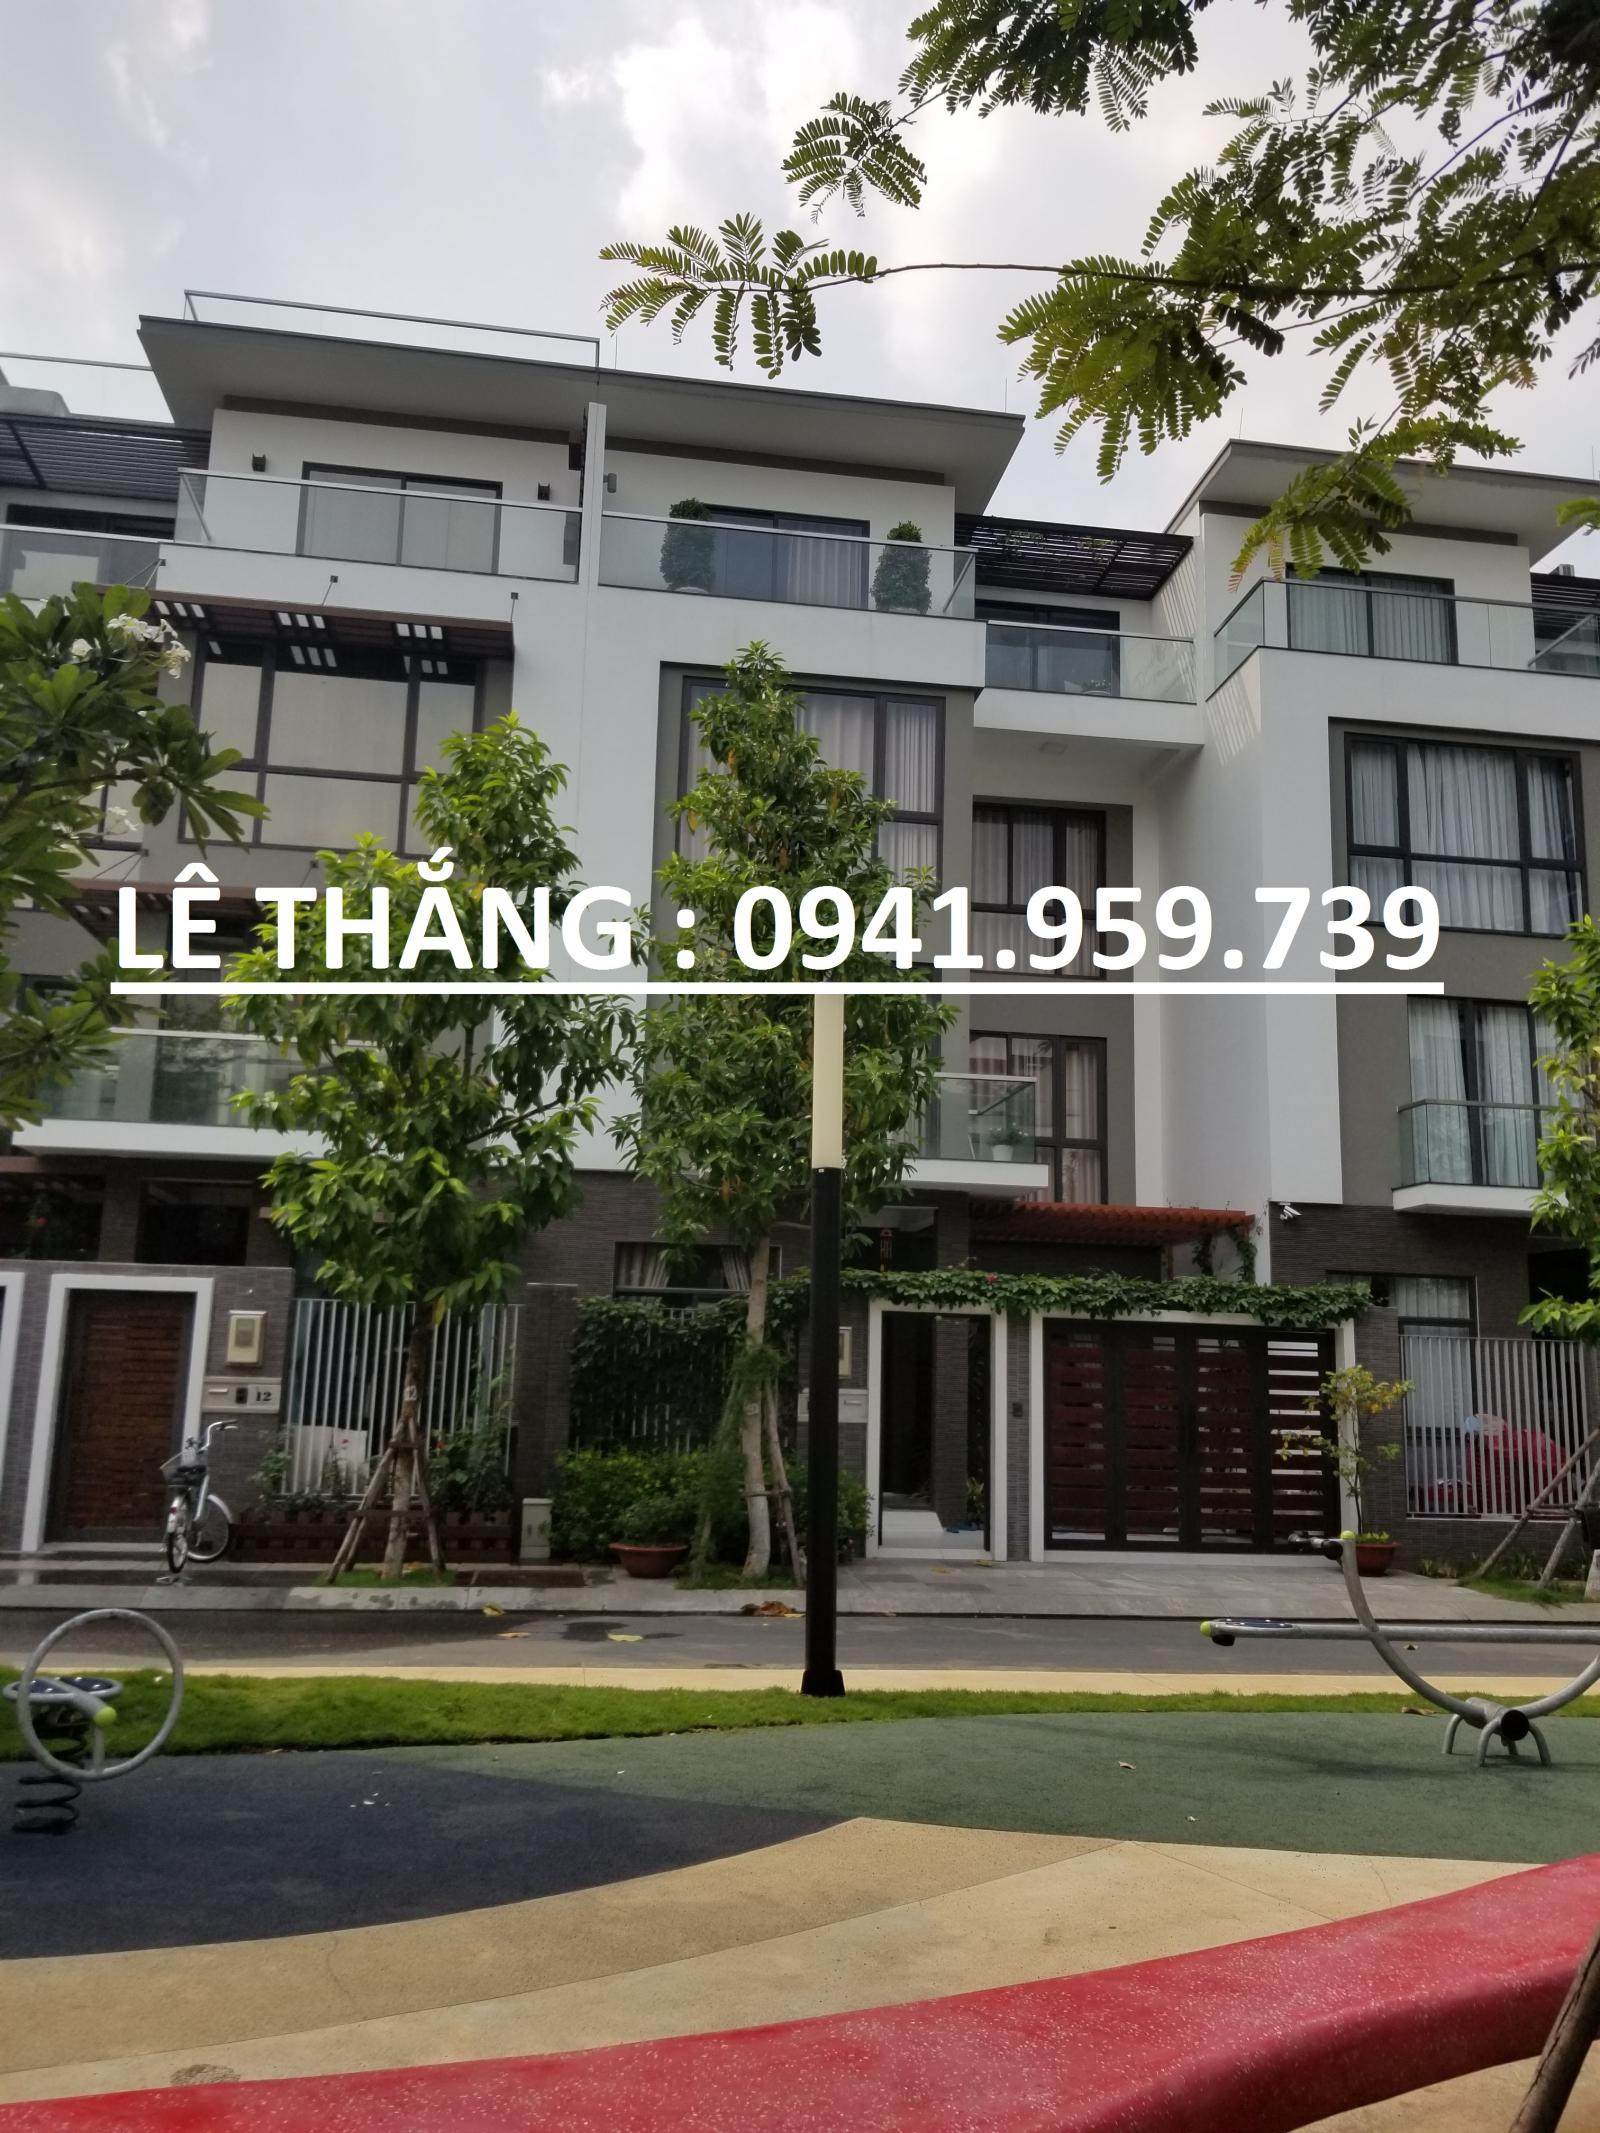  Nhập từ khóa để tìm theo cụm từ Nhà đất bánTìm kiếm Bán nhà đường Lam Sơn, Phường 6, BT. DT 8x20m villa 3 lầu cực đẹp